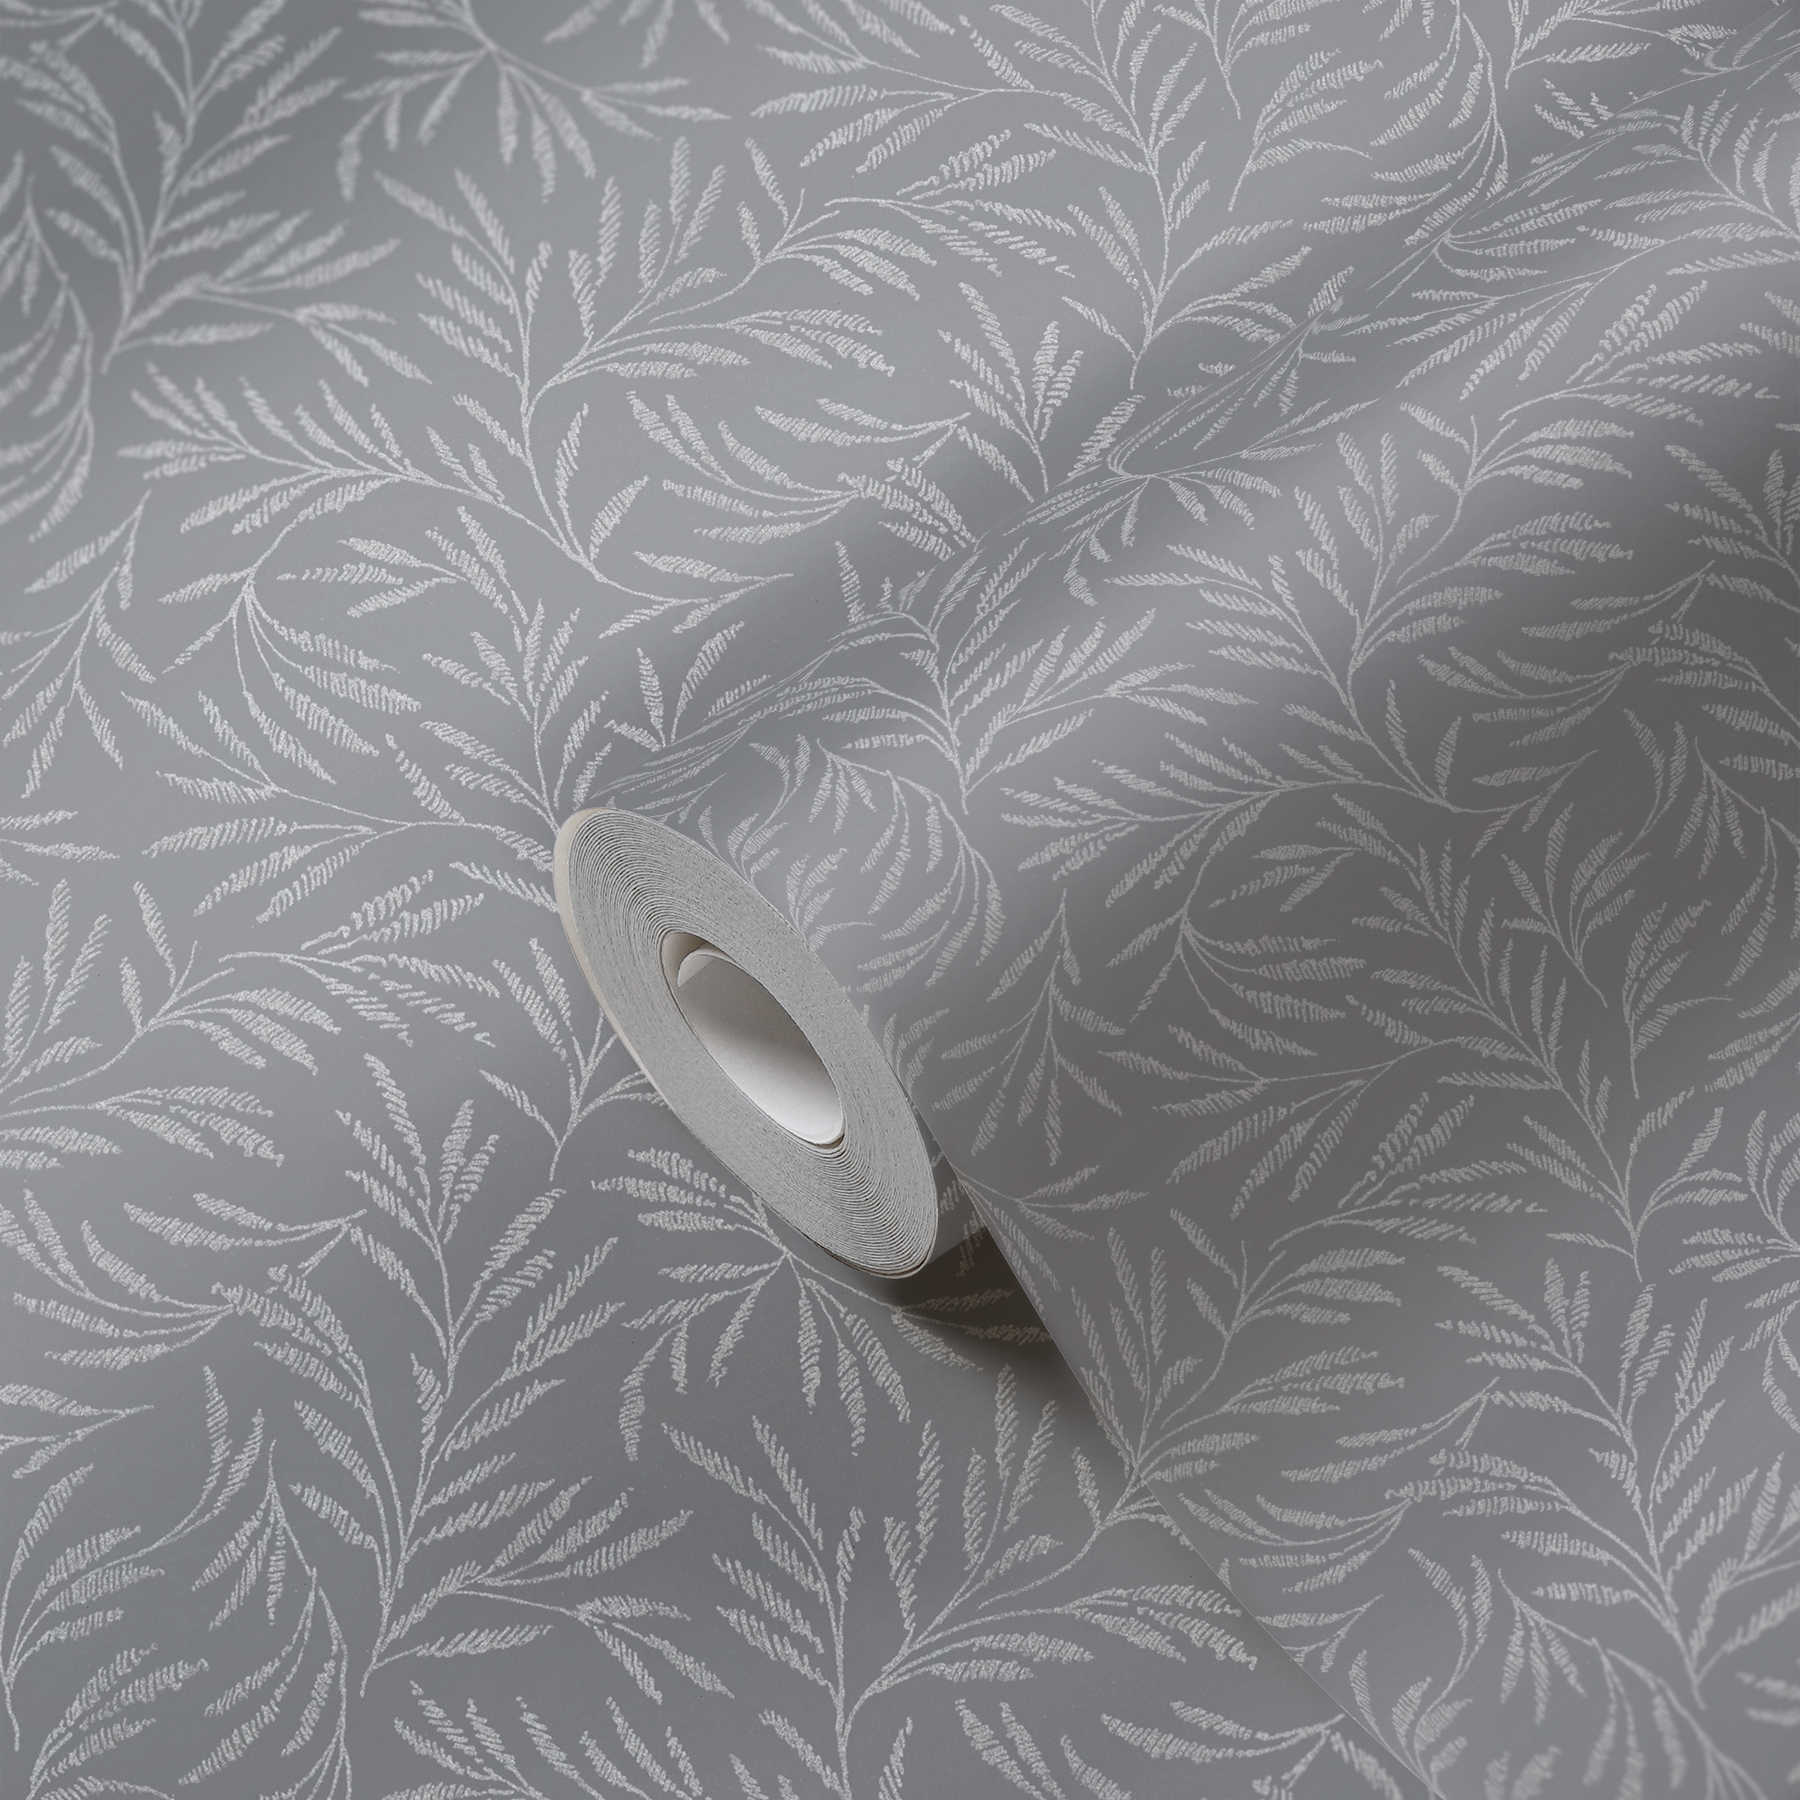             Papier peint intissé gris avec motif de feuilles argentées
        